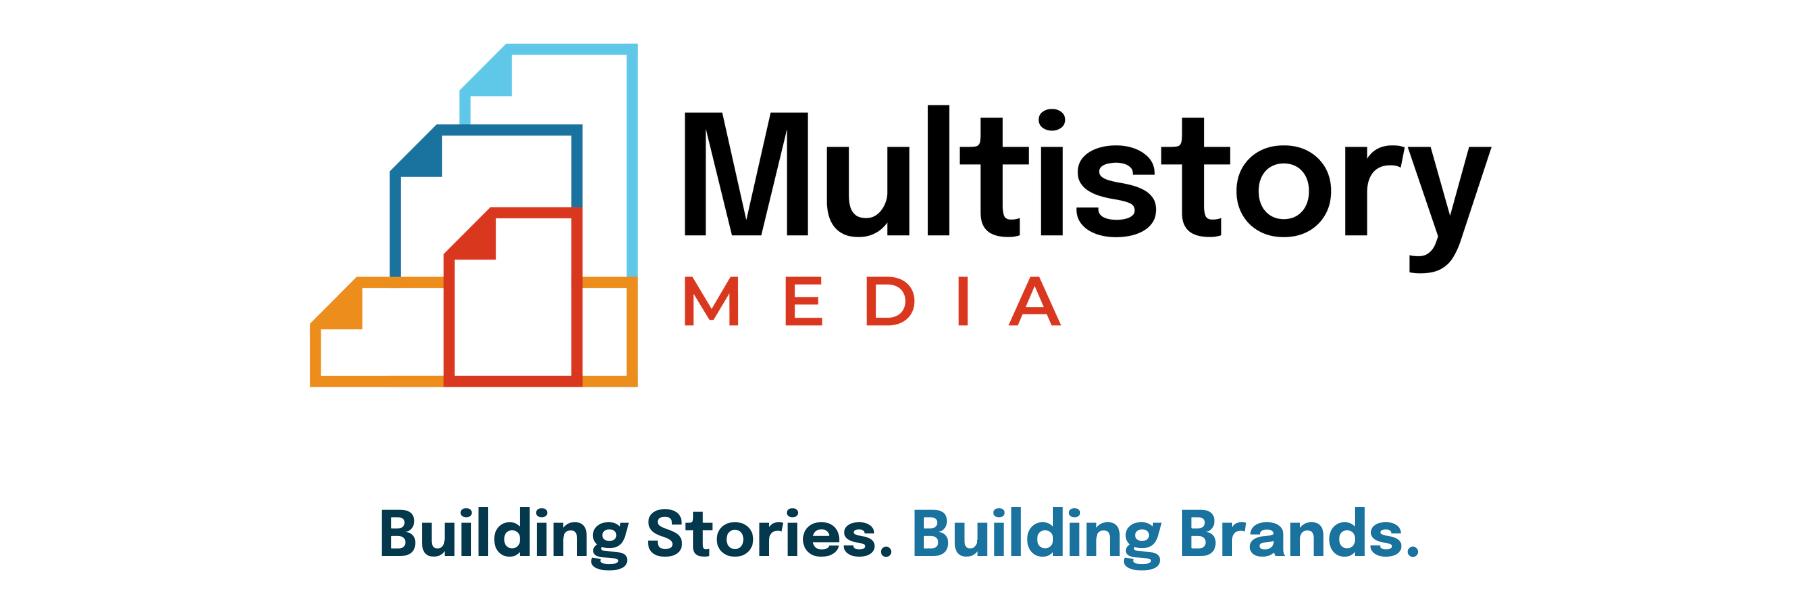 Multistory Media